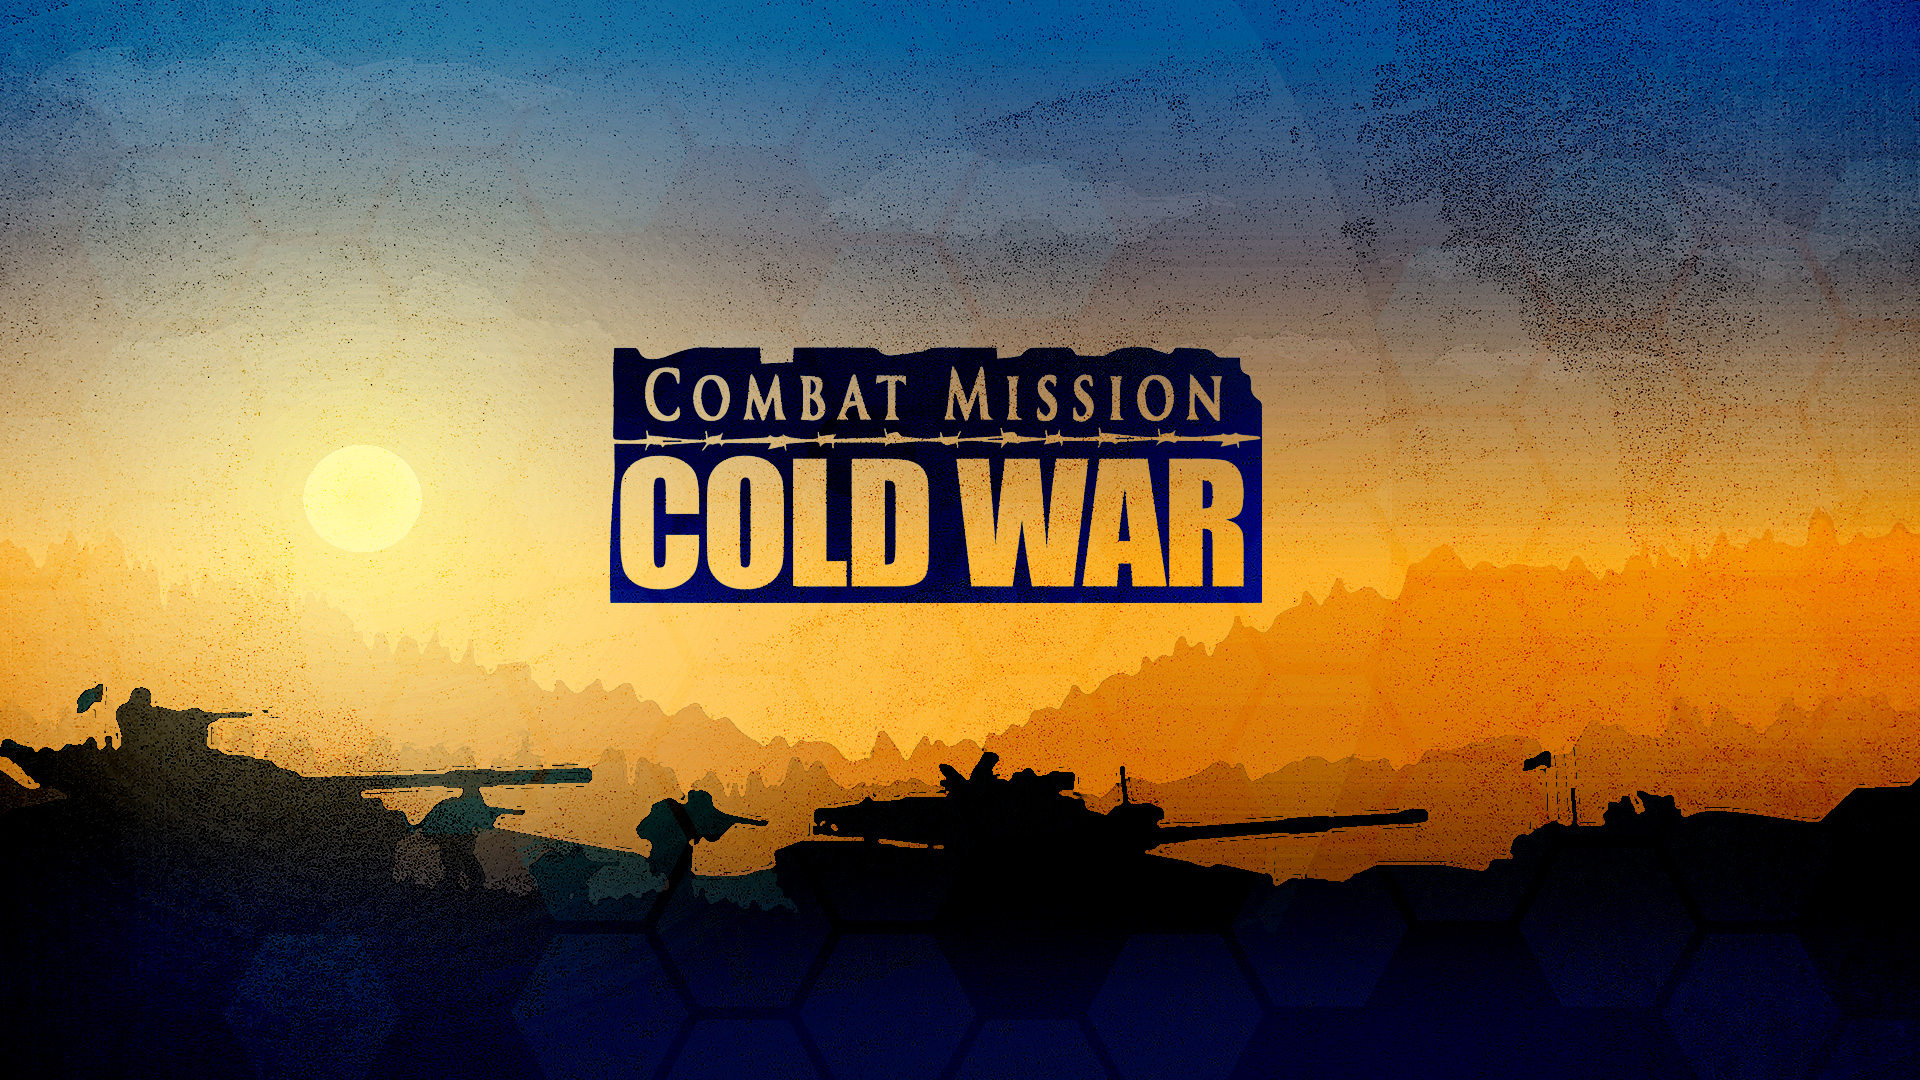 combat-mission-cold-war-announcement.jpg